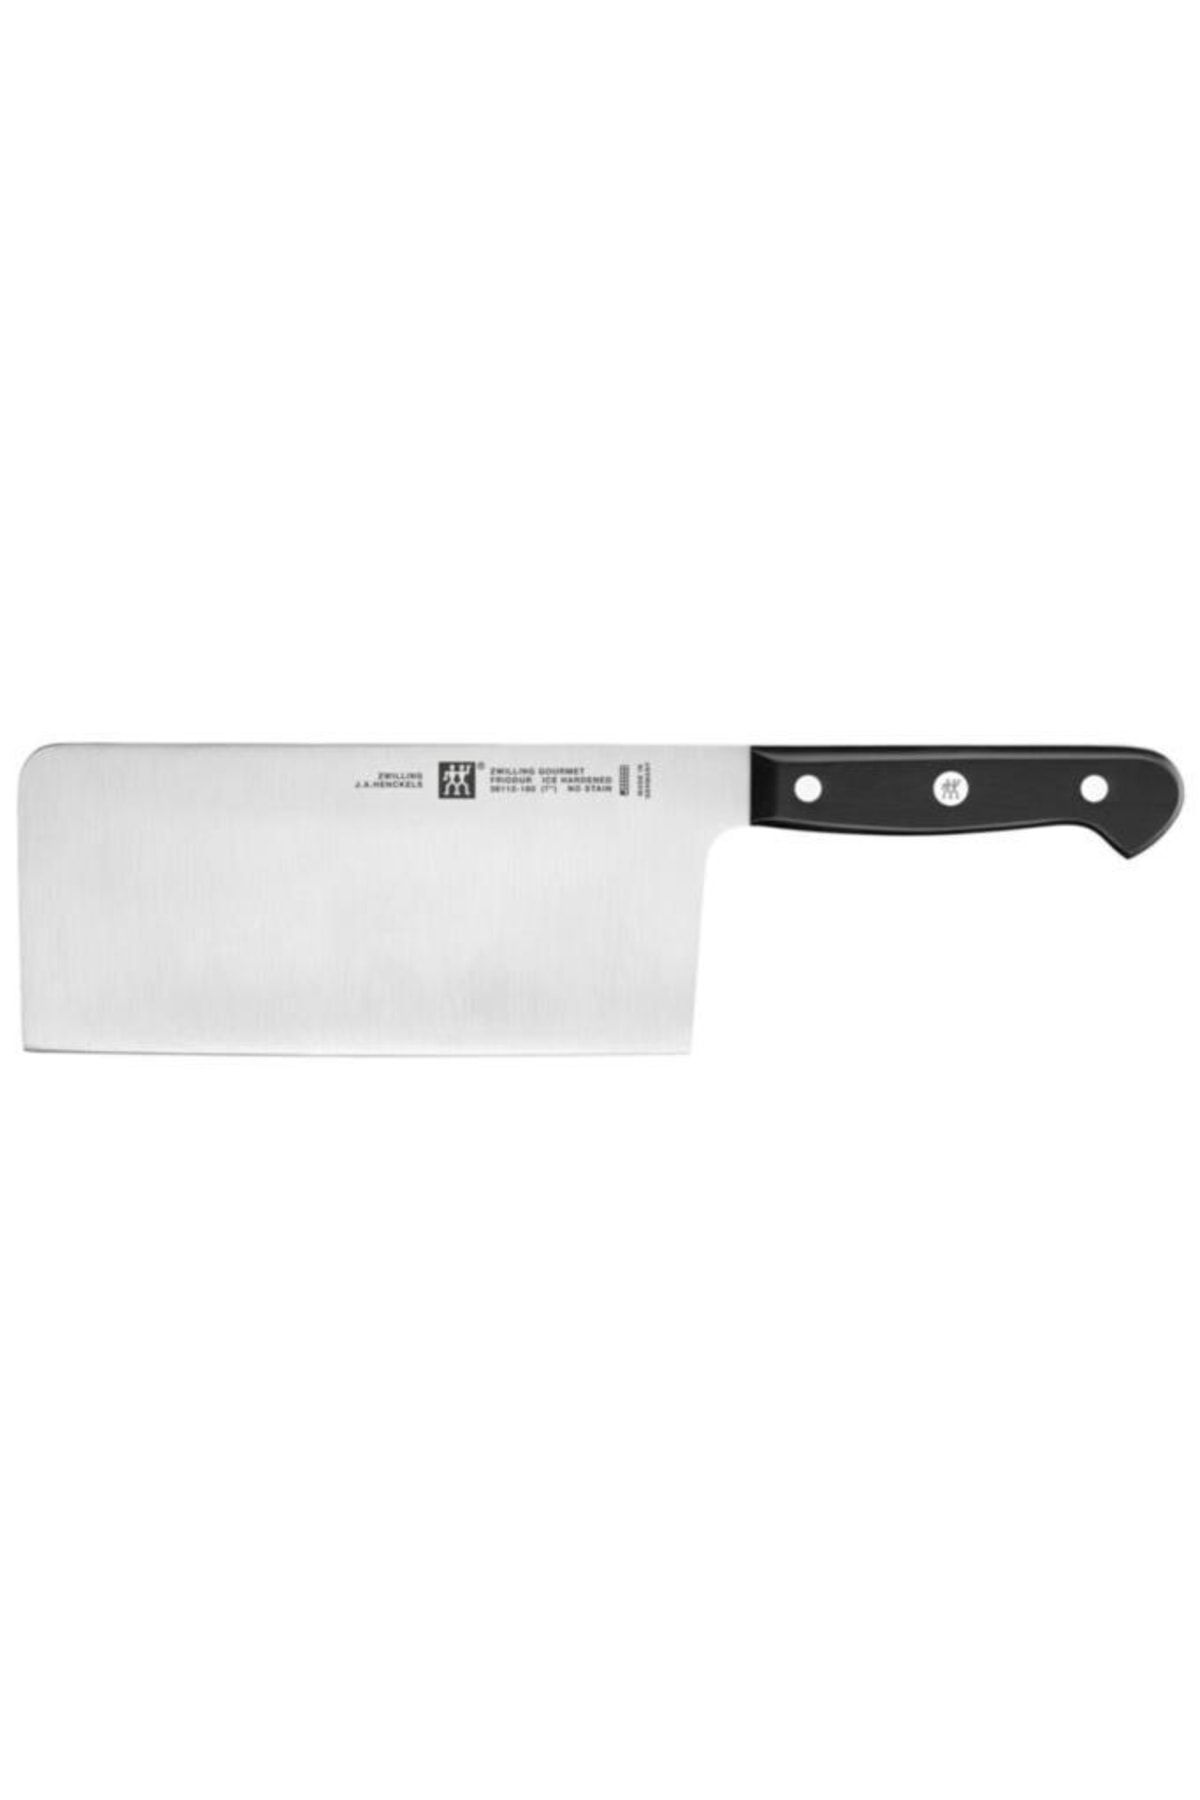 Zwilling Gourmet Çin Şef Bıçağı | Özel Formül Çelik | 18 Cm